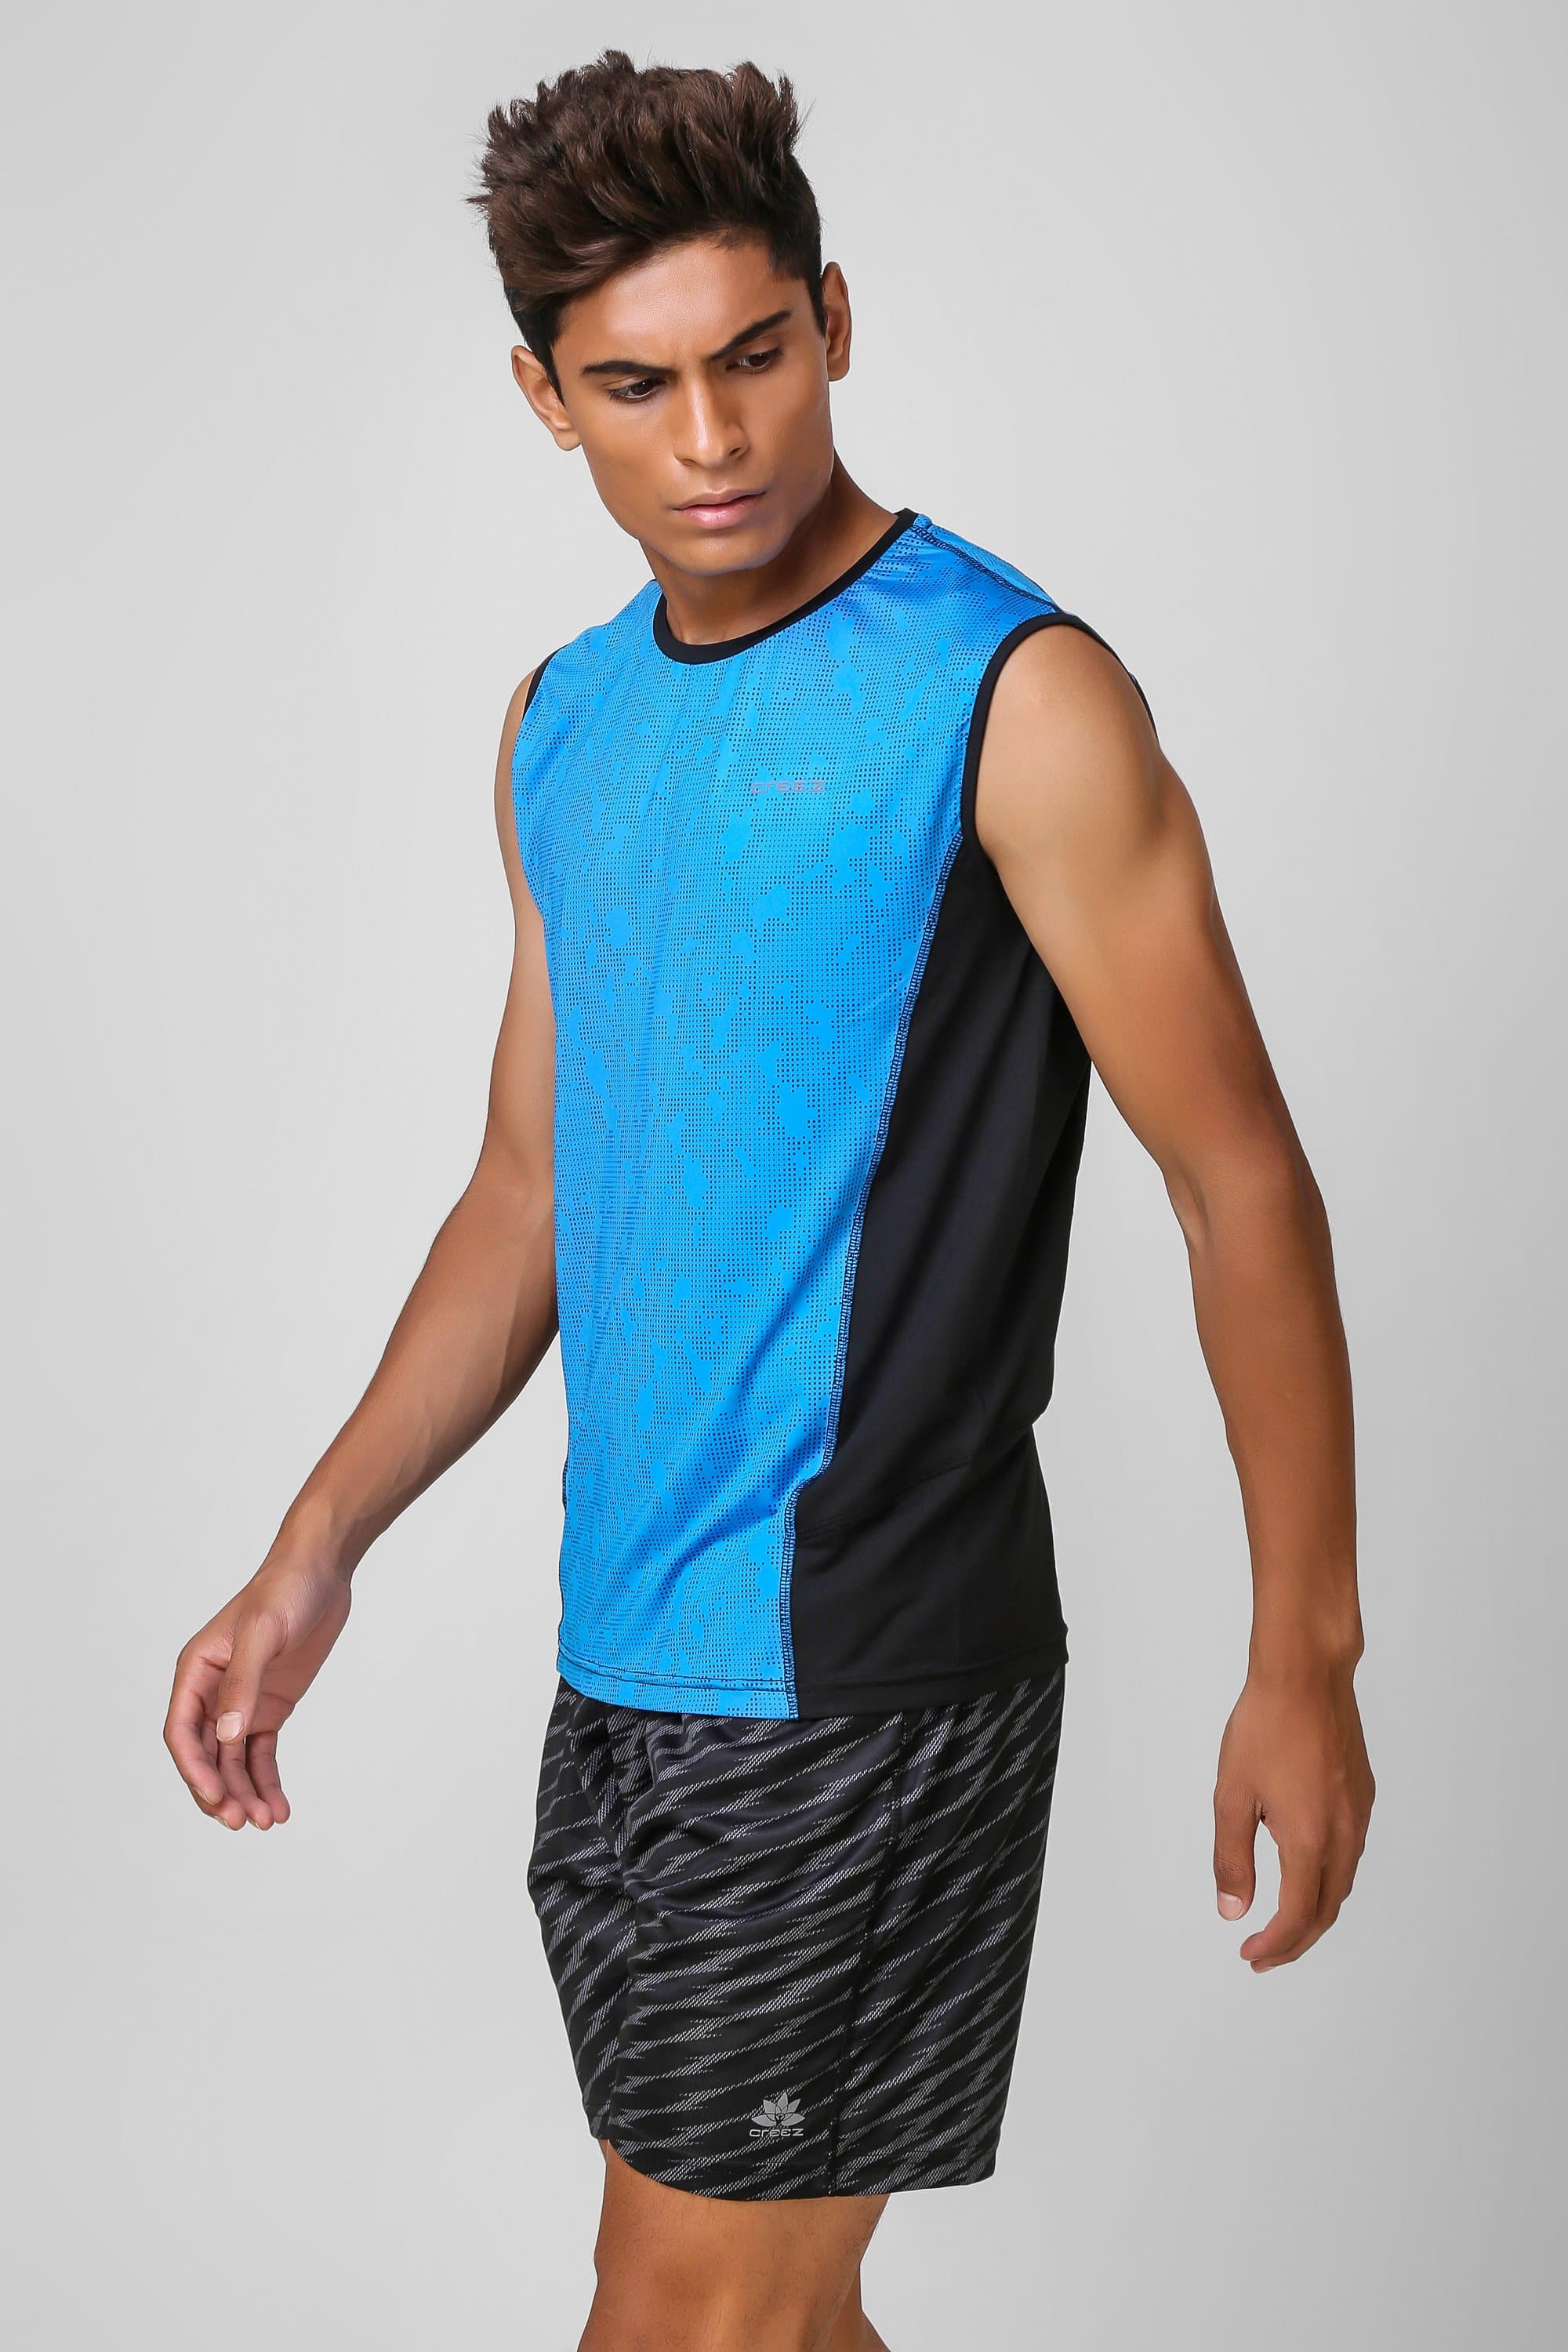 Camo Print Stretchable Sleeveless Tshirt 2